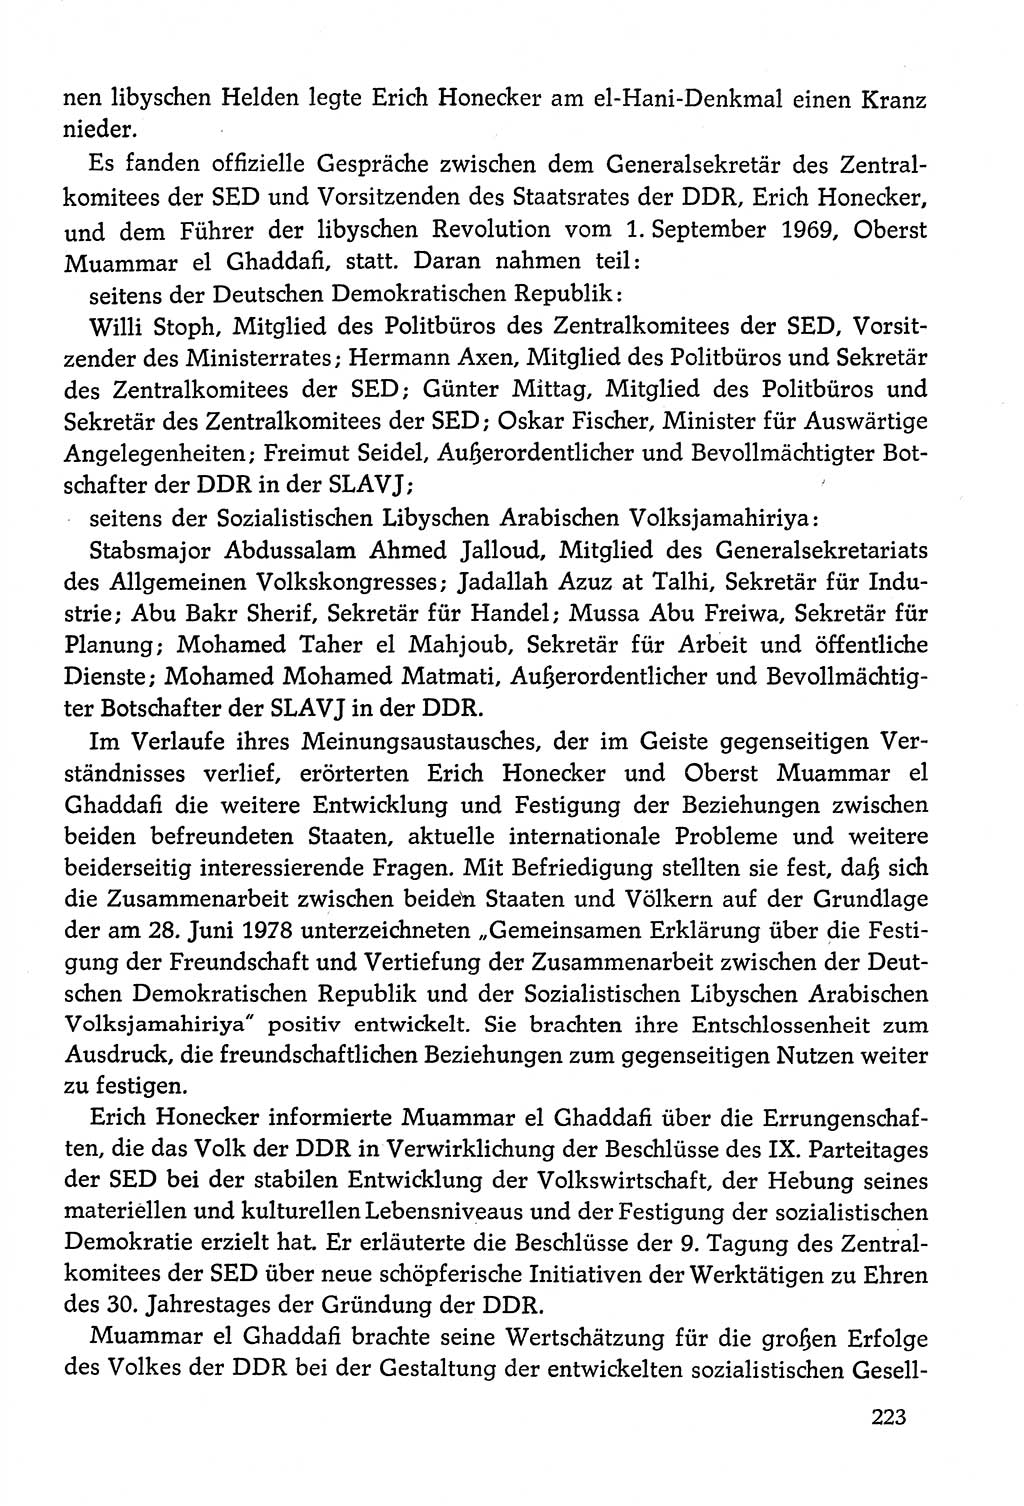 Dokumente der Sozialistischen Einheitspartei Deutschlands (SED) [Deutsche Demokratische Republik (DDR)] 1978-1979, Seite 223 (Dok. SED DDR 1978-1979, S. 223)